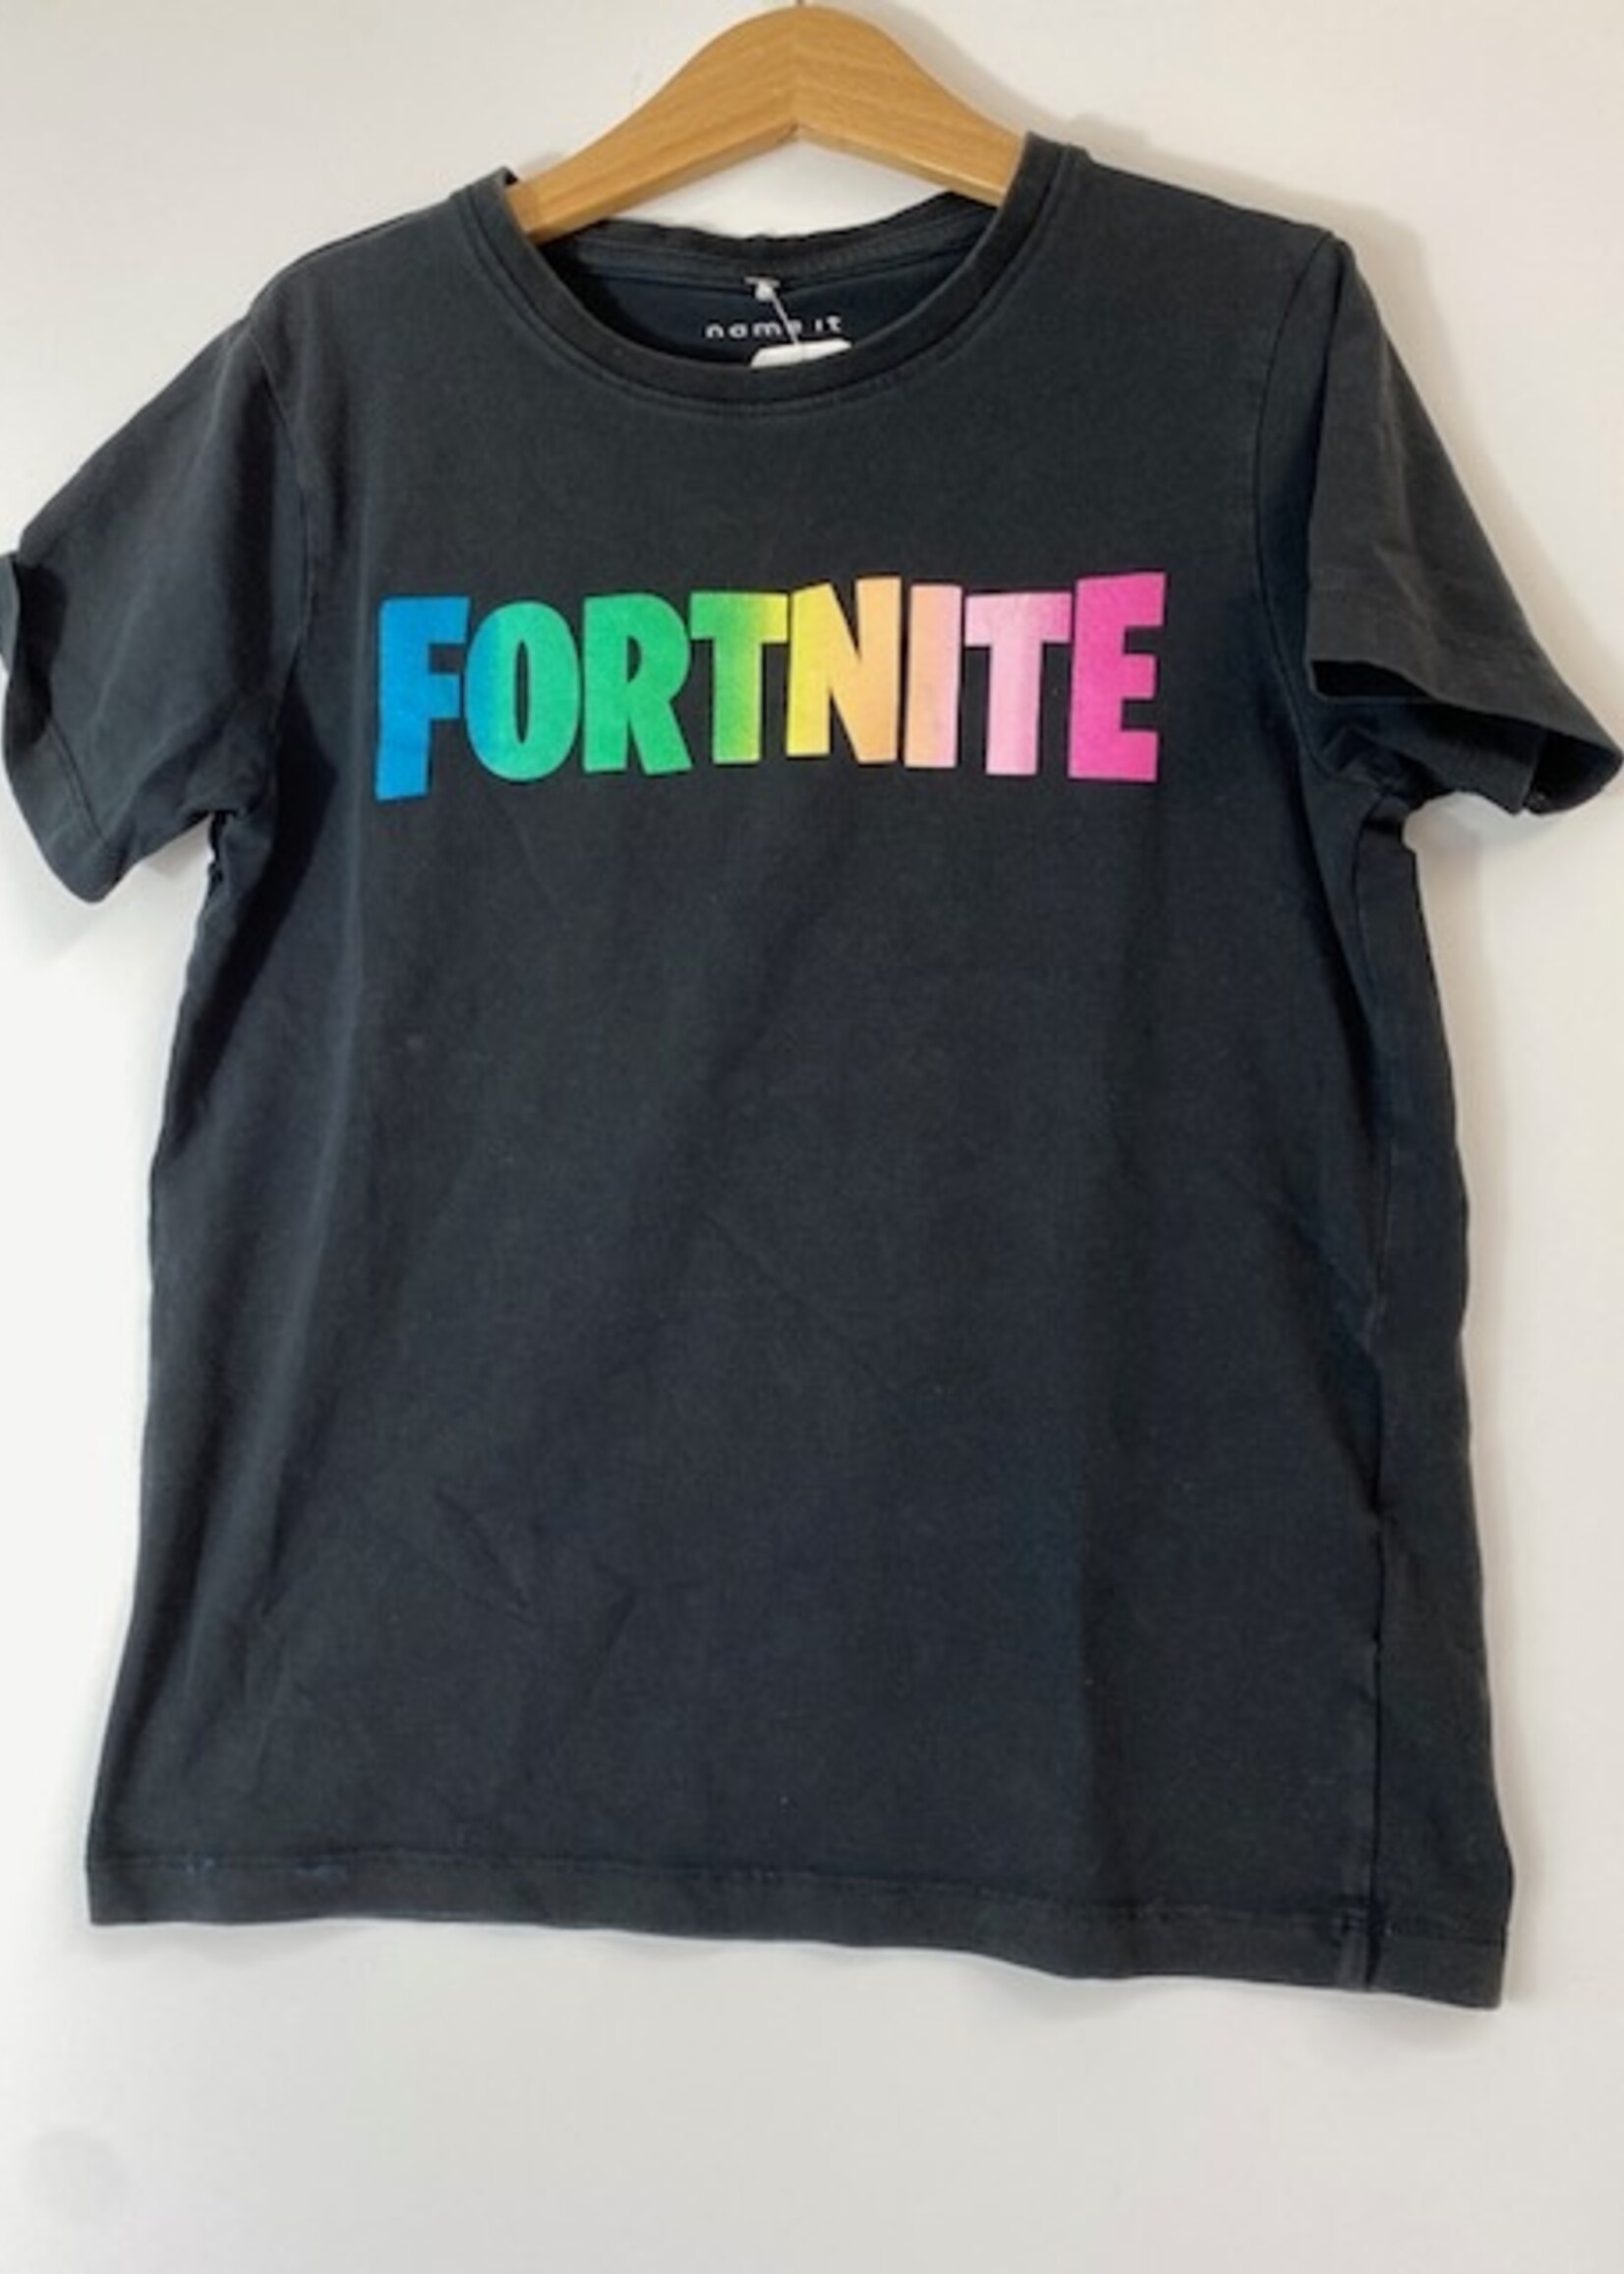 NAME IT T-shirt Name It Fortnite